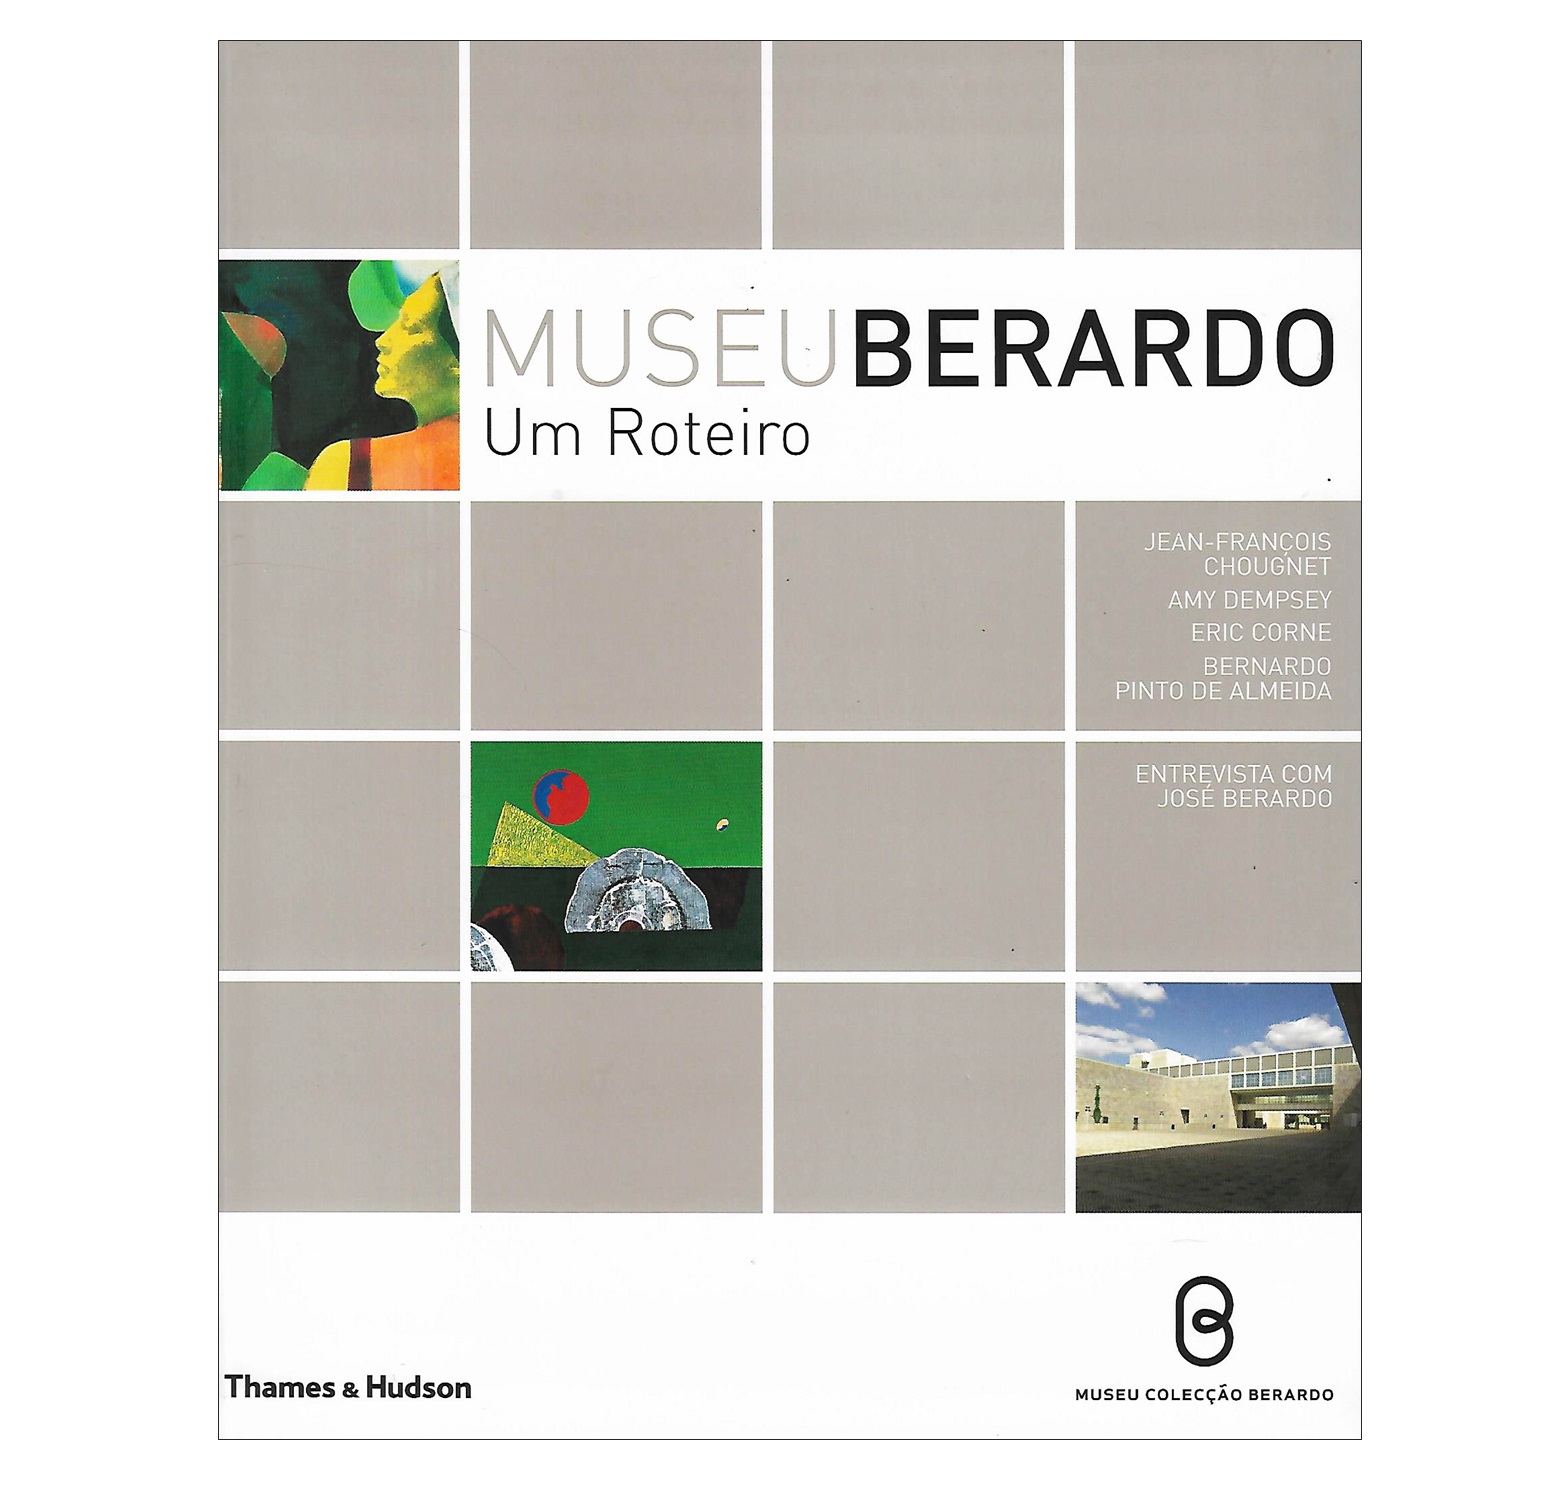 MUSEU BERARDO: UM ROTEIRO